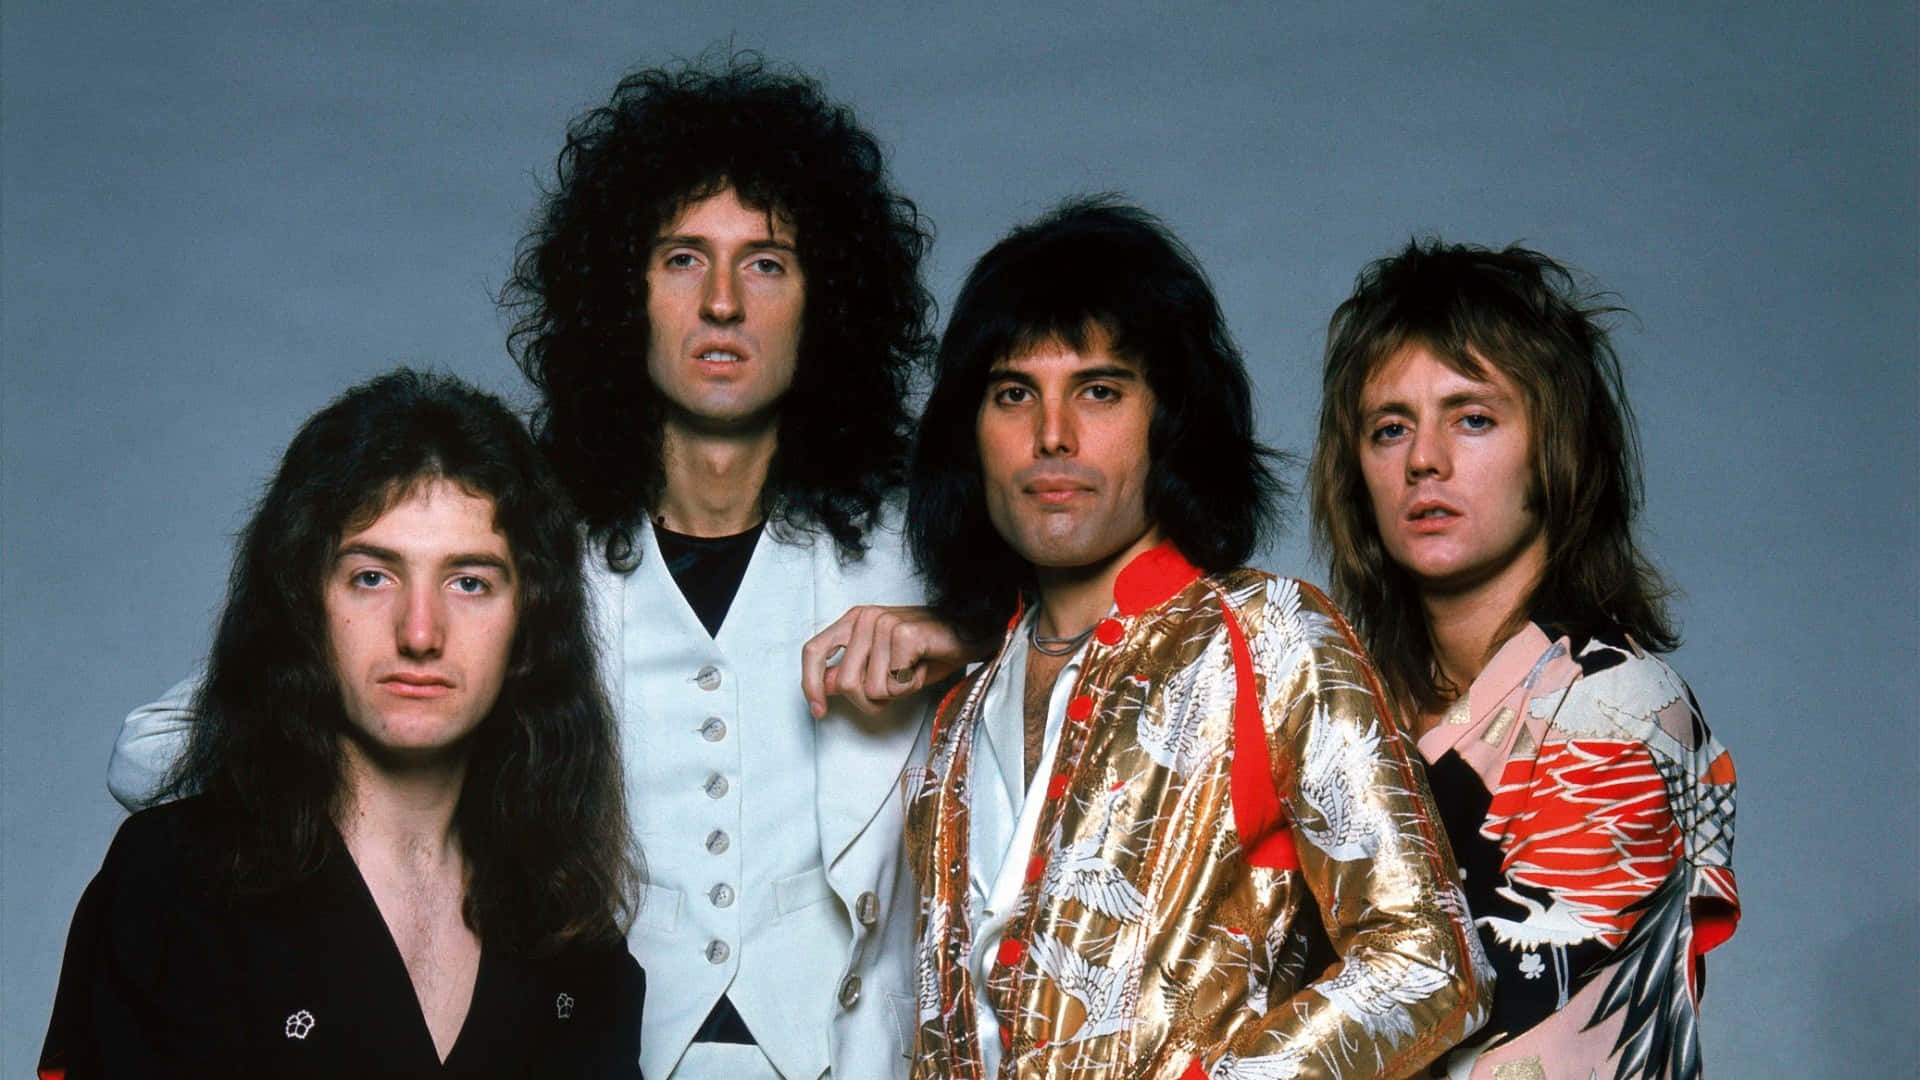 Laleggendaria Band Rock Britannica Queen Sta Facendo Vibrare Il Mondo Sin Dalla Sua Formazione Agli Inizi Degli Anni '70.